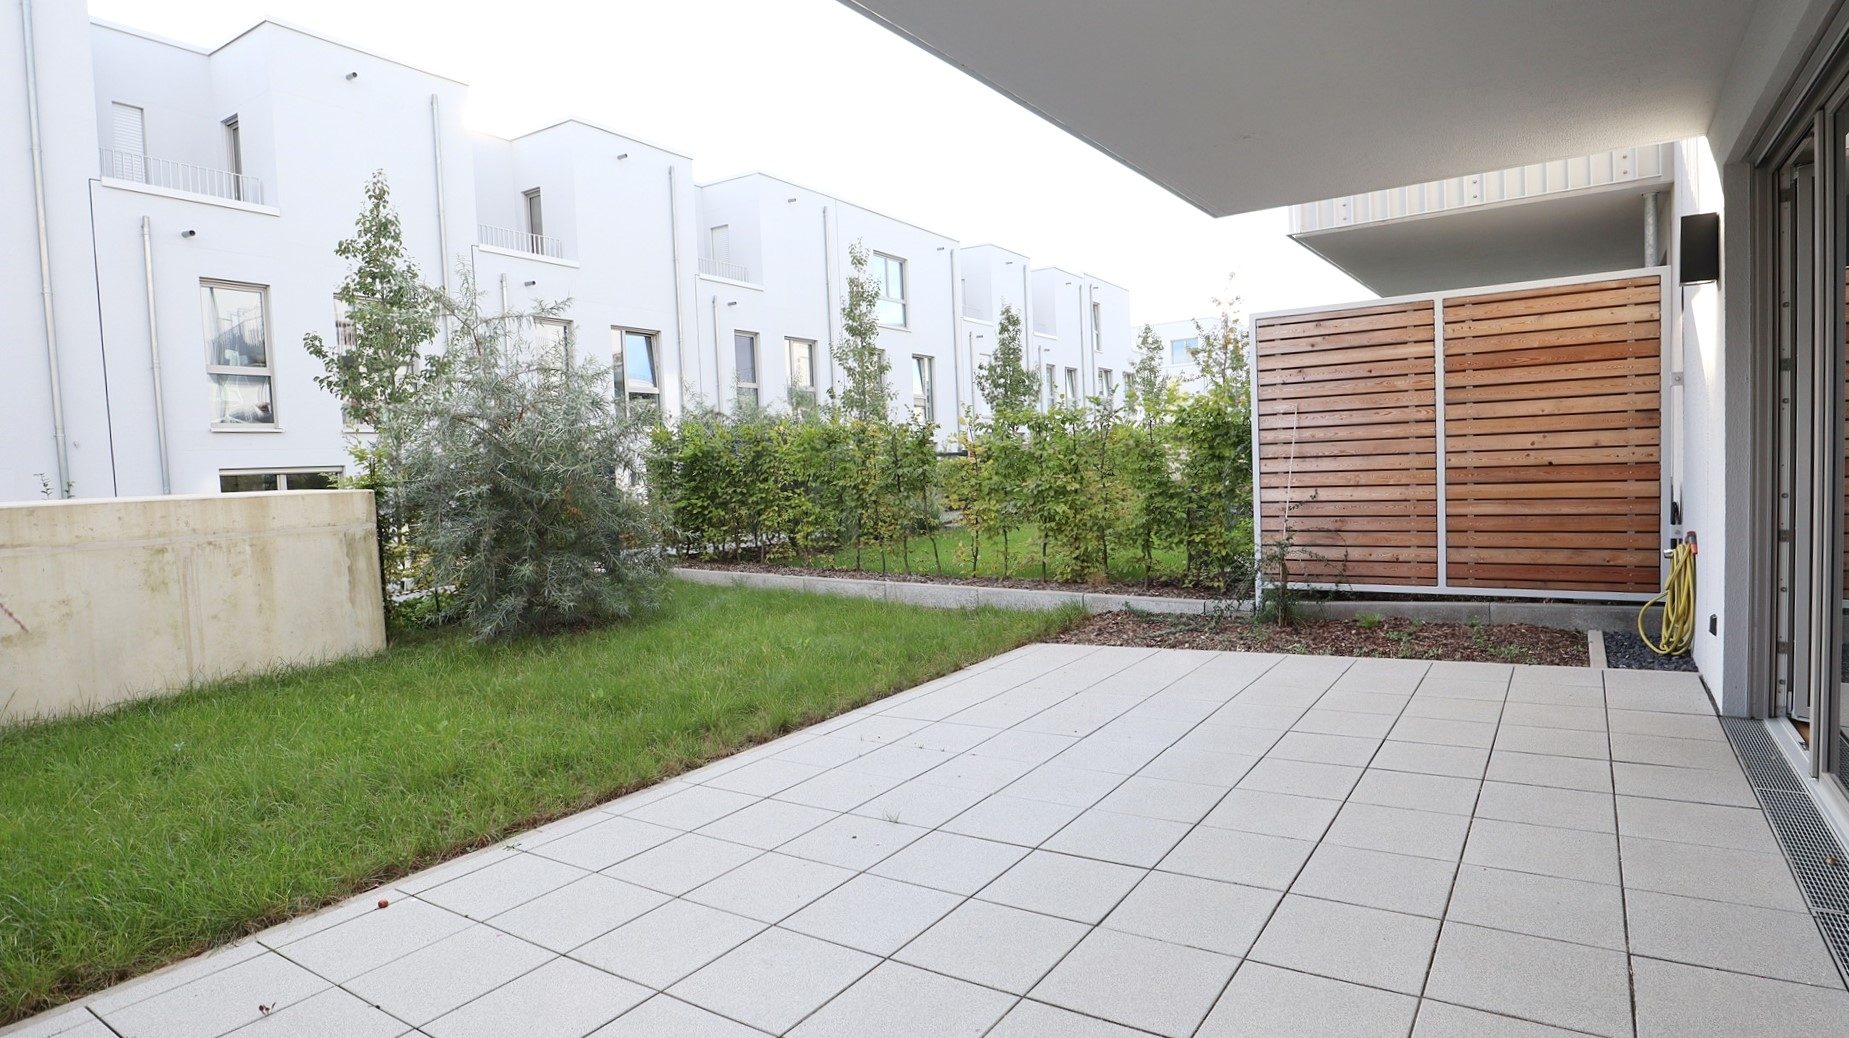 Böcker Wohnimmobilien - Immobilienangebot - Düsseldorf / Unterbach - Alle - 2-Zimmer-Neubau-Gartenwohnung in gepflegter Umgebung